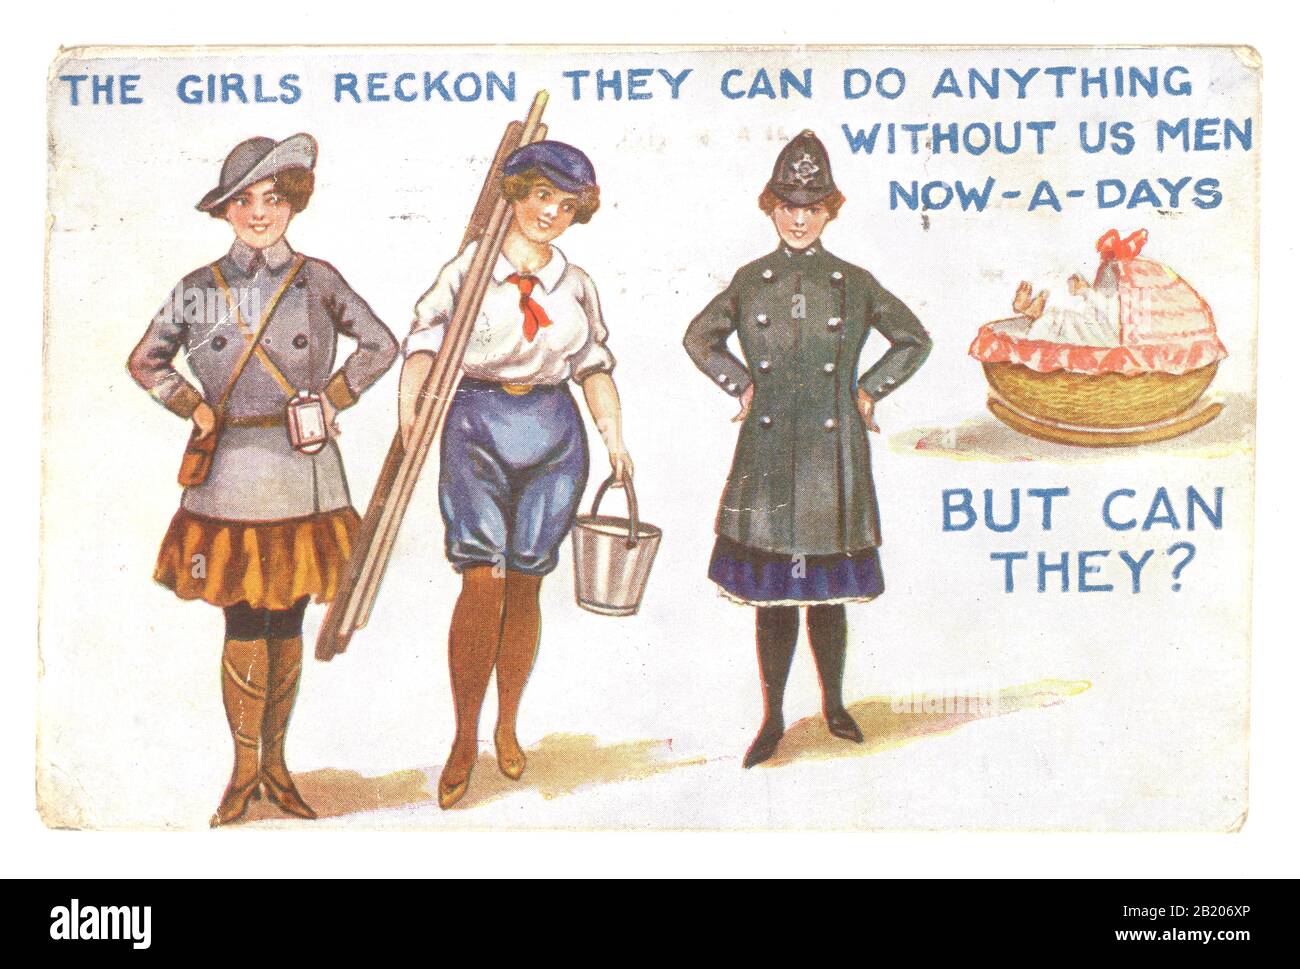 Anfang 1900 veröffentlichte die Postkarte aus der britischen Comic-Ära WW1 am 31. Juli 1918. Auf der Postkarte steht: "Die Mädchen rechnen damit, dass sie heute pro Tag alles ohne uns Männer tun können - Aber können sie?" Frauen übernahmen während des "Großen Krieges" Männerrollen hier waren sie als Busleiter, Fensterputzer und bei der Polizei beschäftigt. GROSSBRITANNIEN Stockfoto